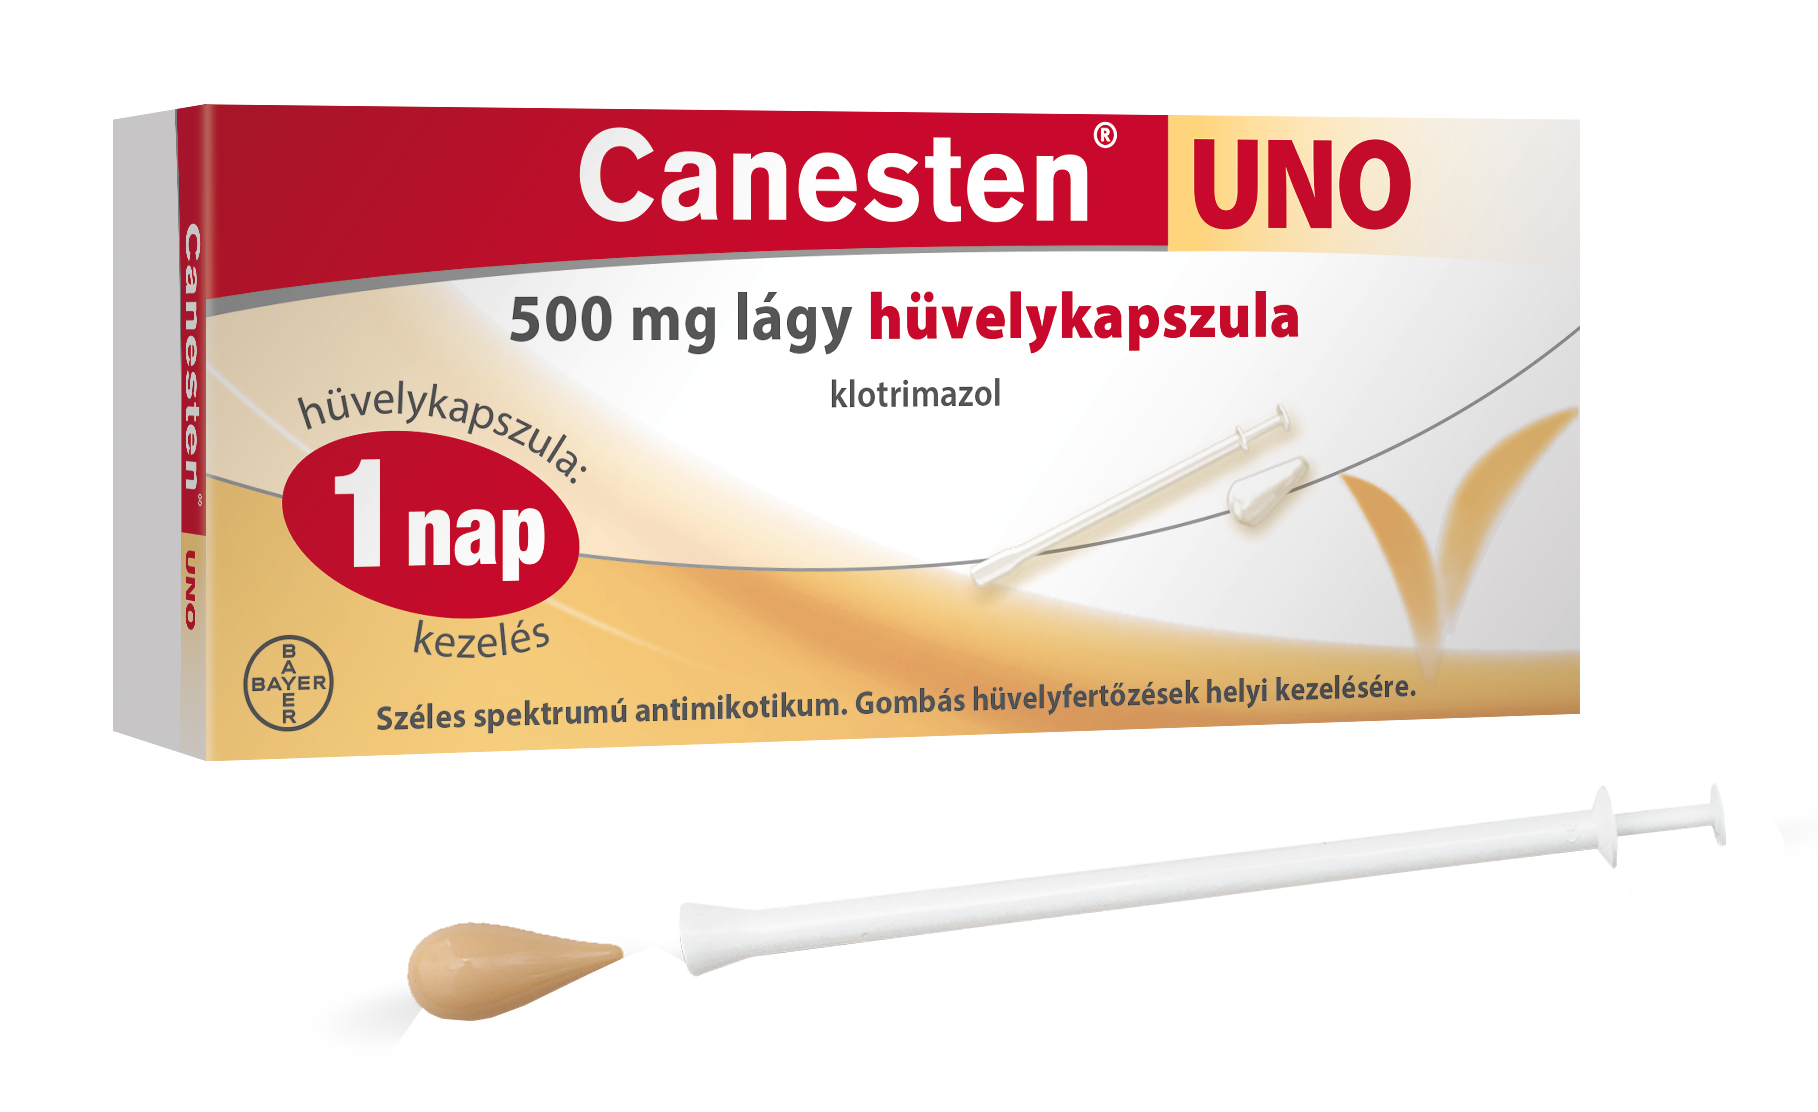 Canesten Uno 500 mg lágy hüvelykapszula